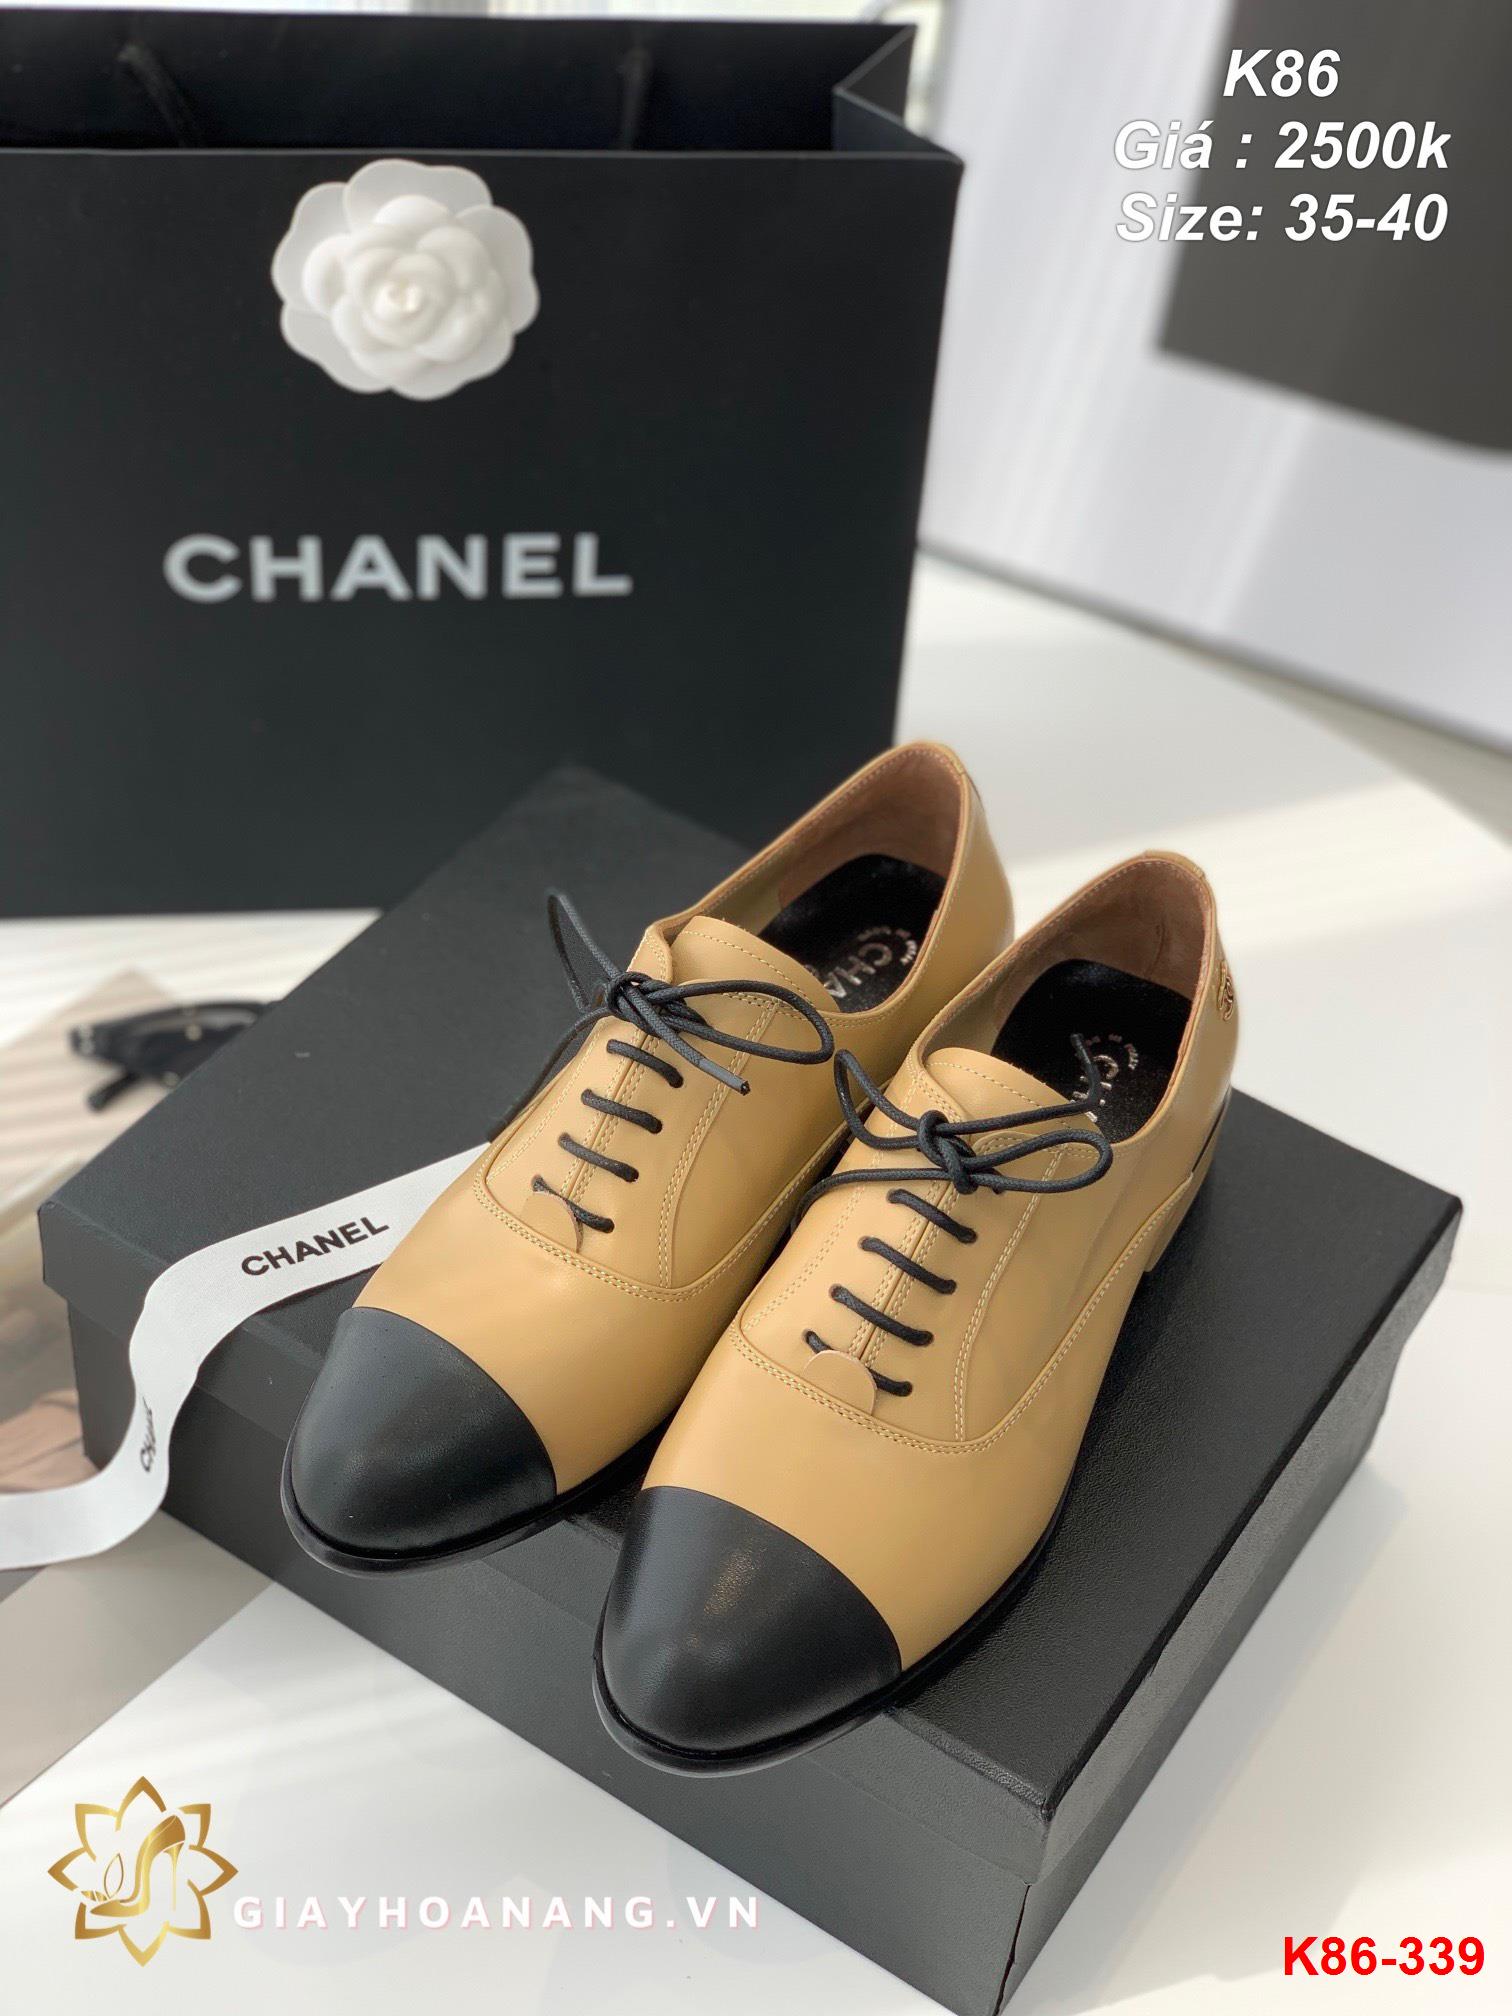 K86-339 Chanel giày lười siêu cấp